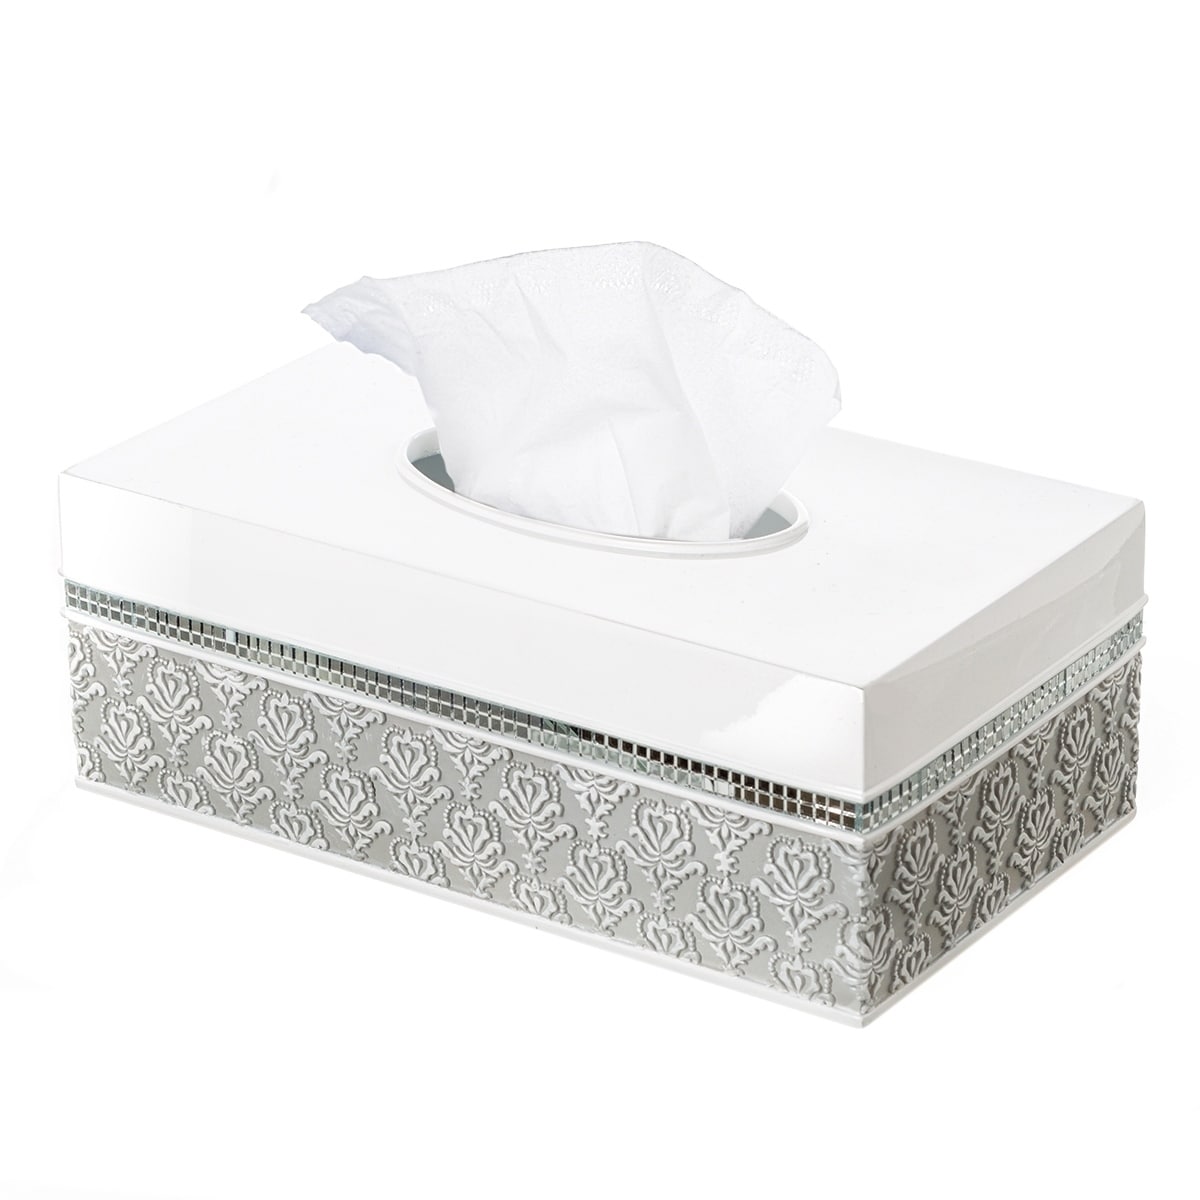 white tissue box